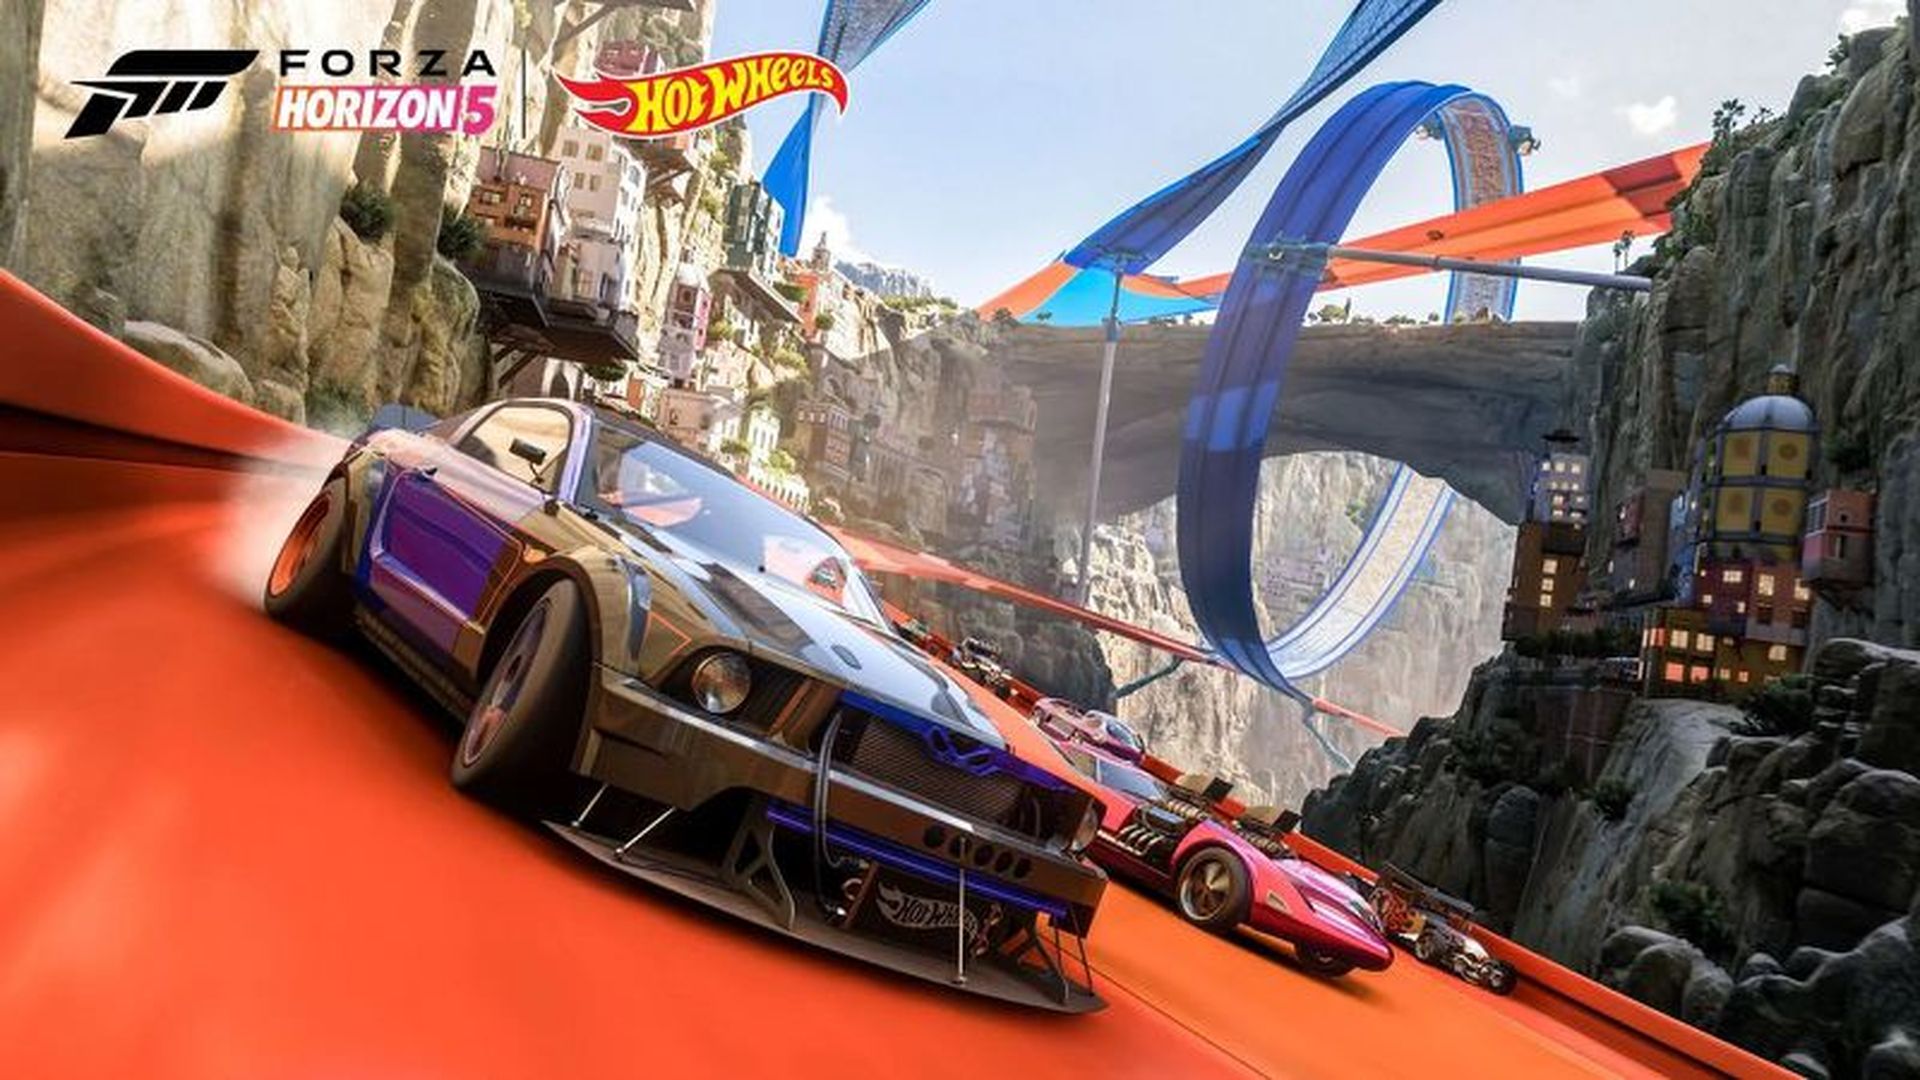 Damas y caballeros, el DLC Hot Wheels de Forza Horizon 5 ya está disponible y trae un nuevo centro de carreras y el juego de herramientas de construcción de pistas del juego junto con una flota de artefactos fundidos a presión e infraestructura de pistas de plástico.